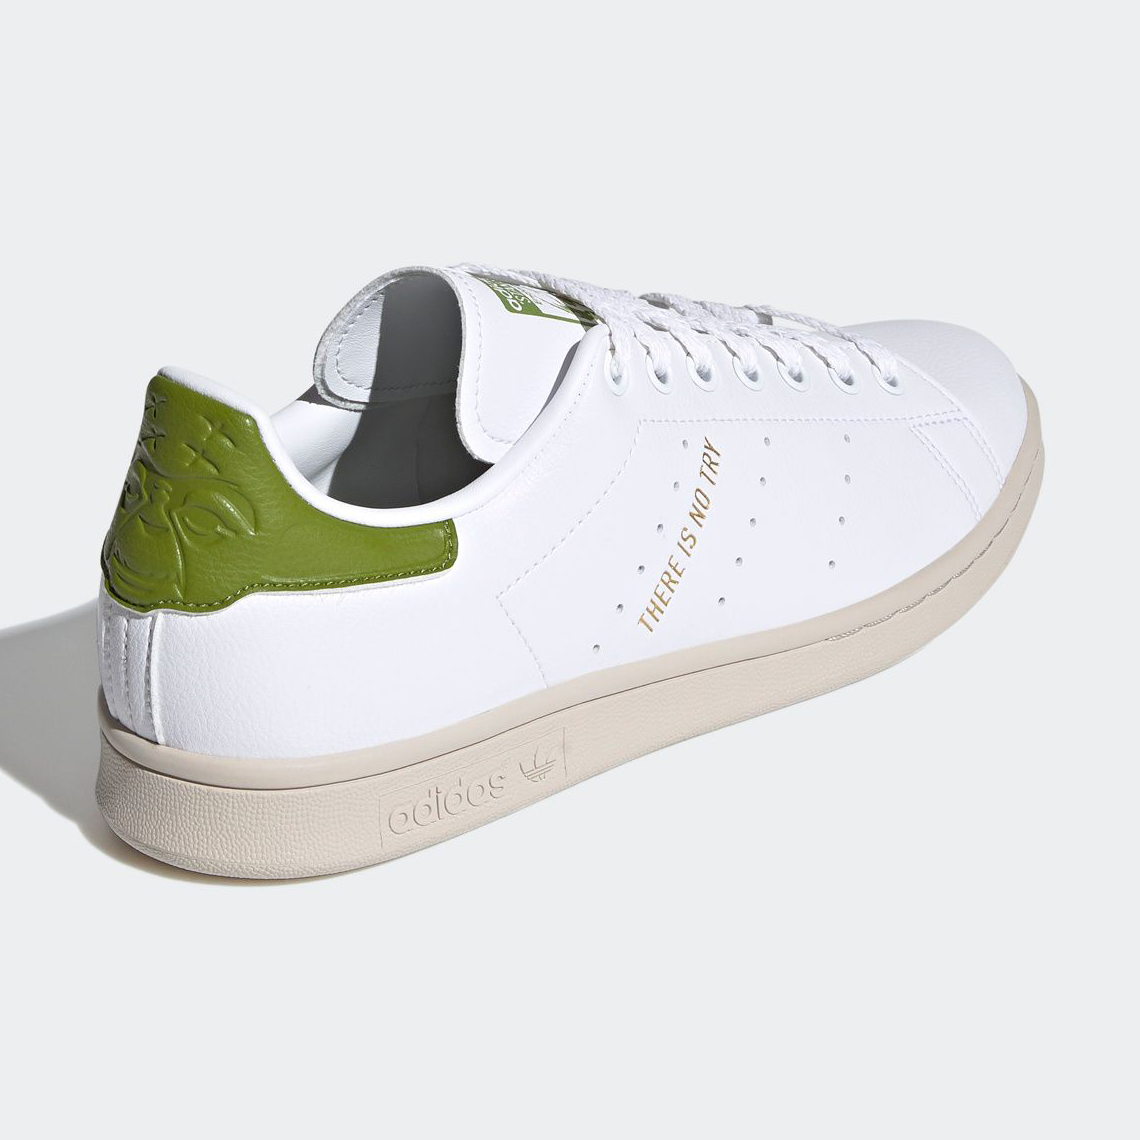 Adidas Stan Smith Yoda Fy5463 3